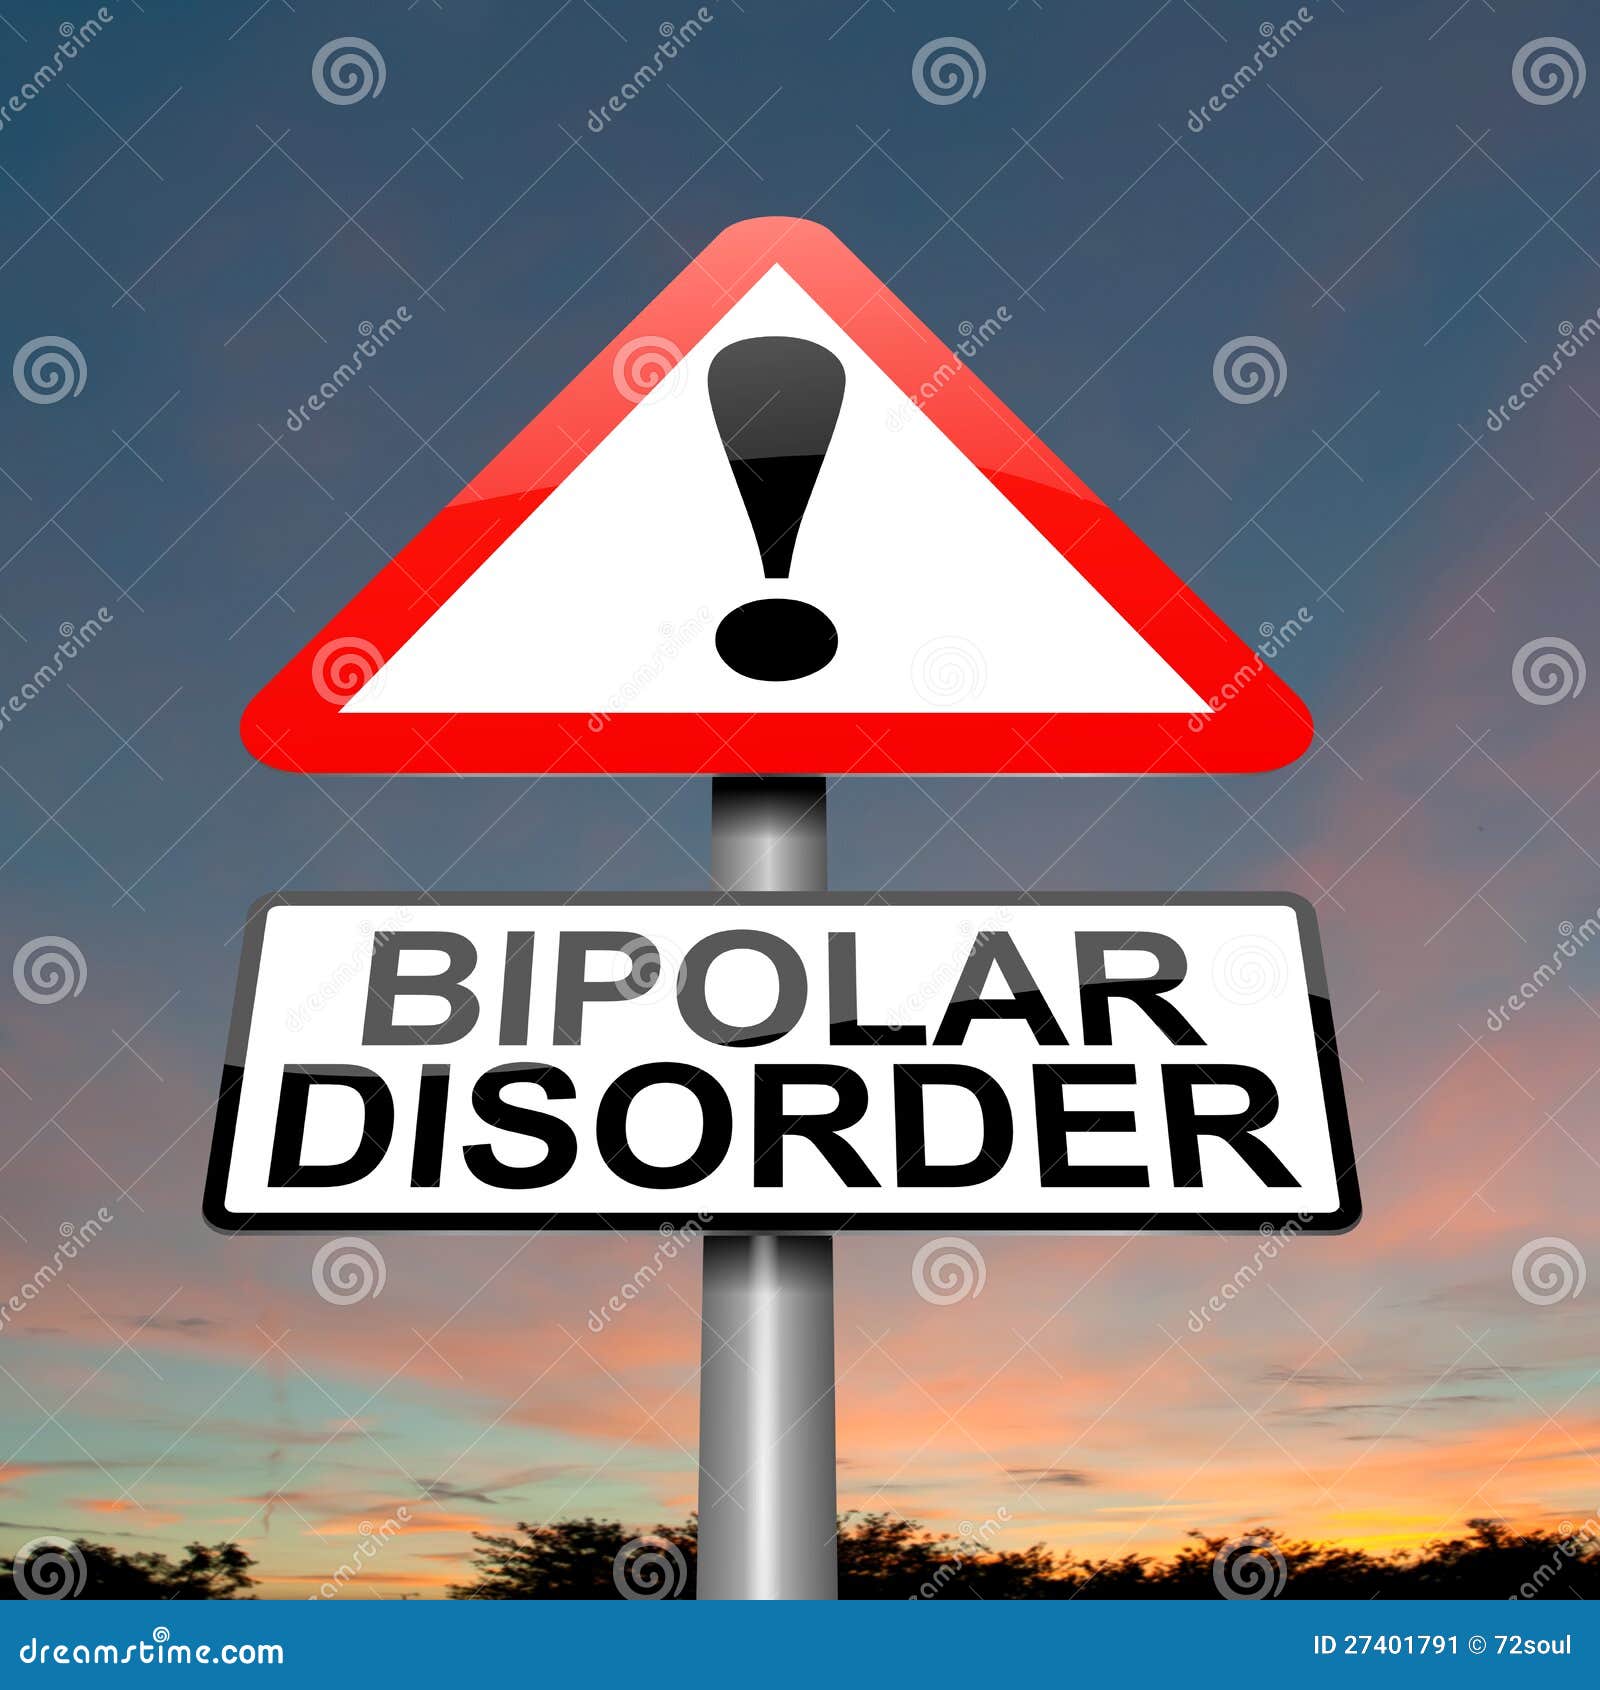 Saiba mais sobre desordem bipolar